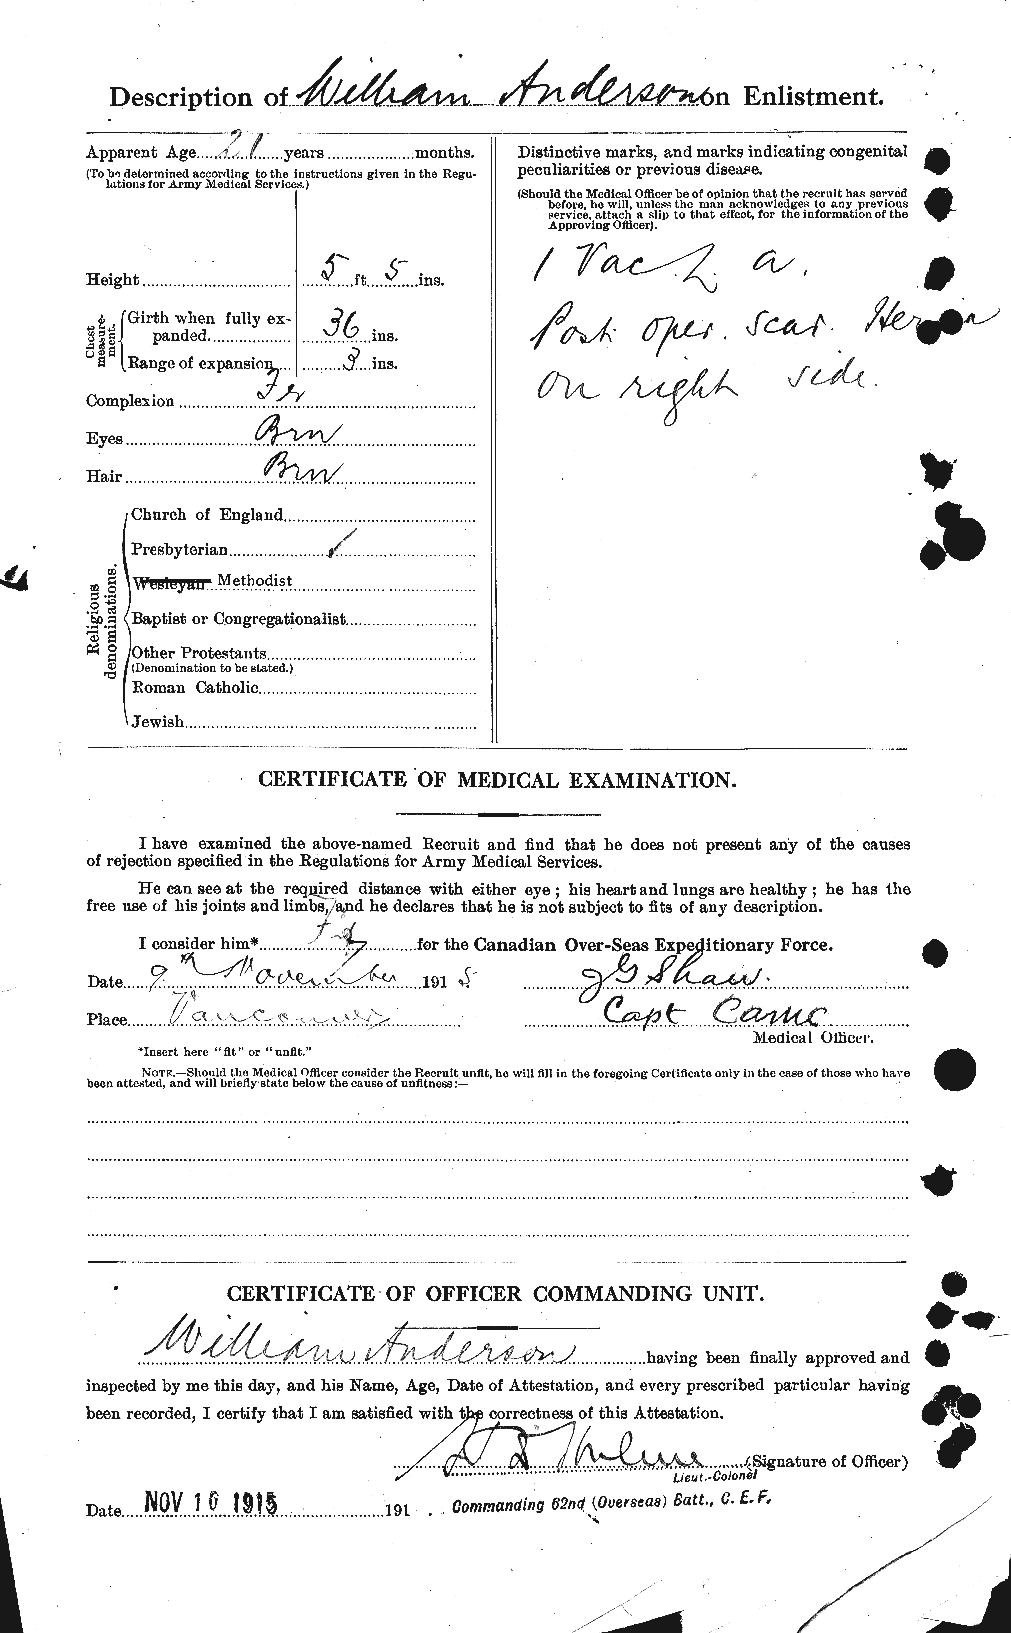 Dossiers du Personnel de la Première Guerre mondiale - CEC 210762b